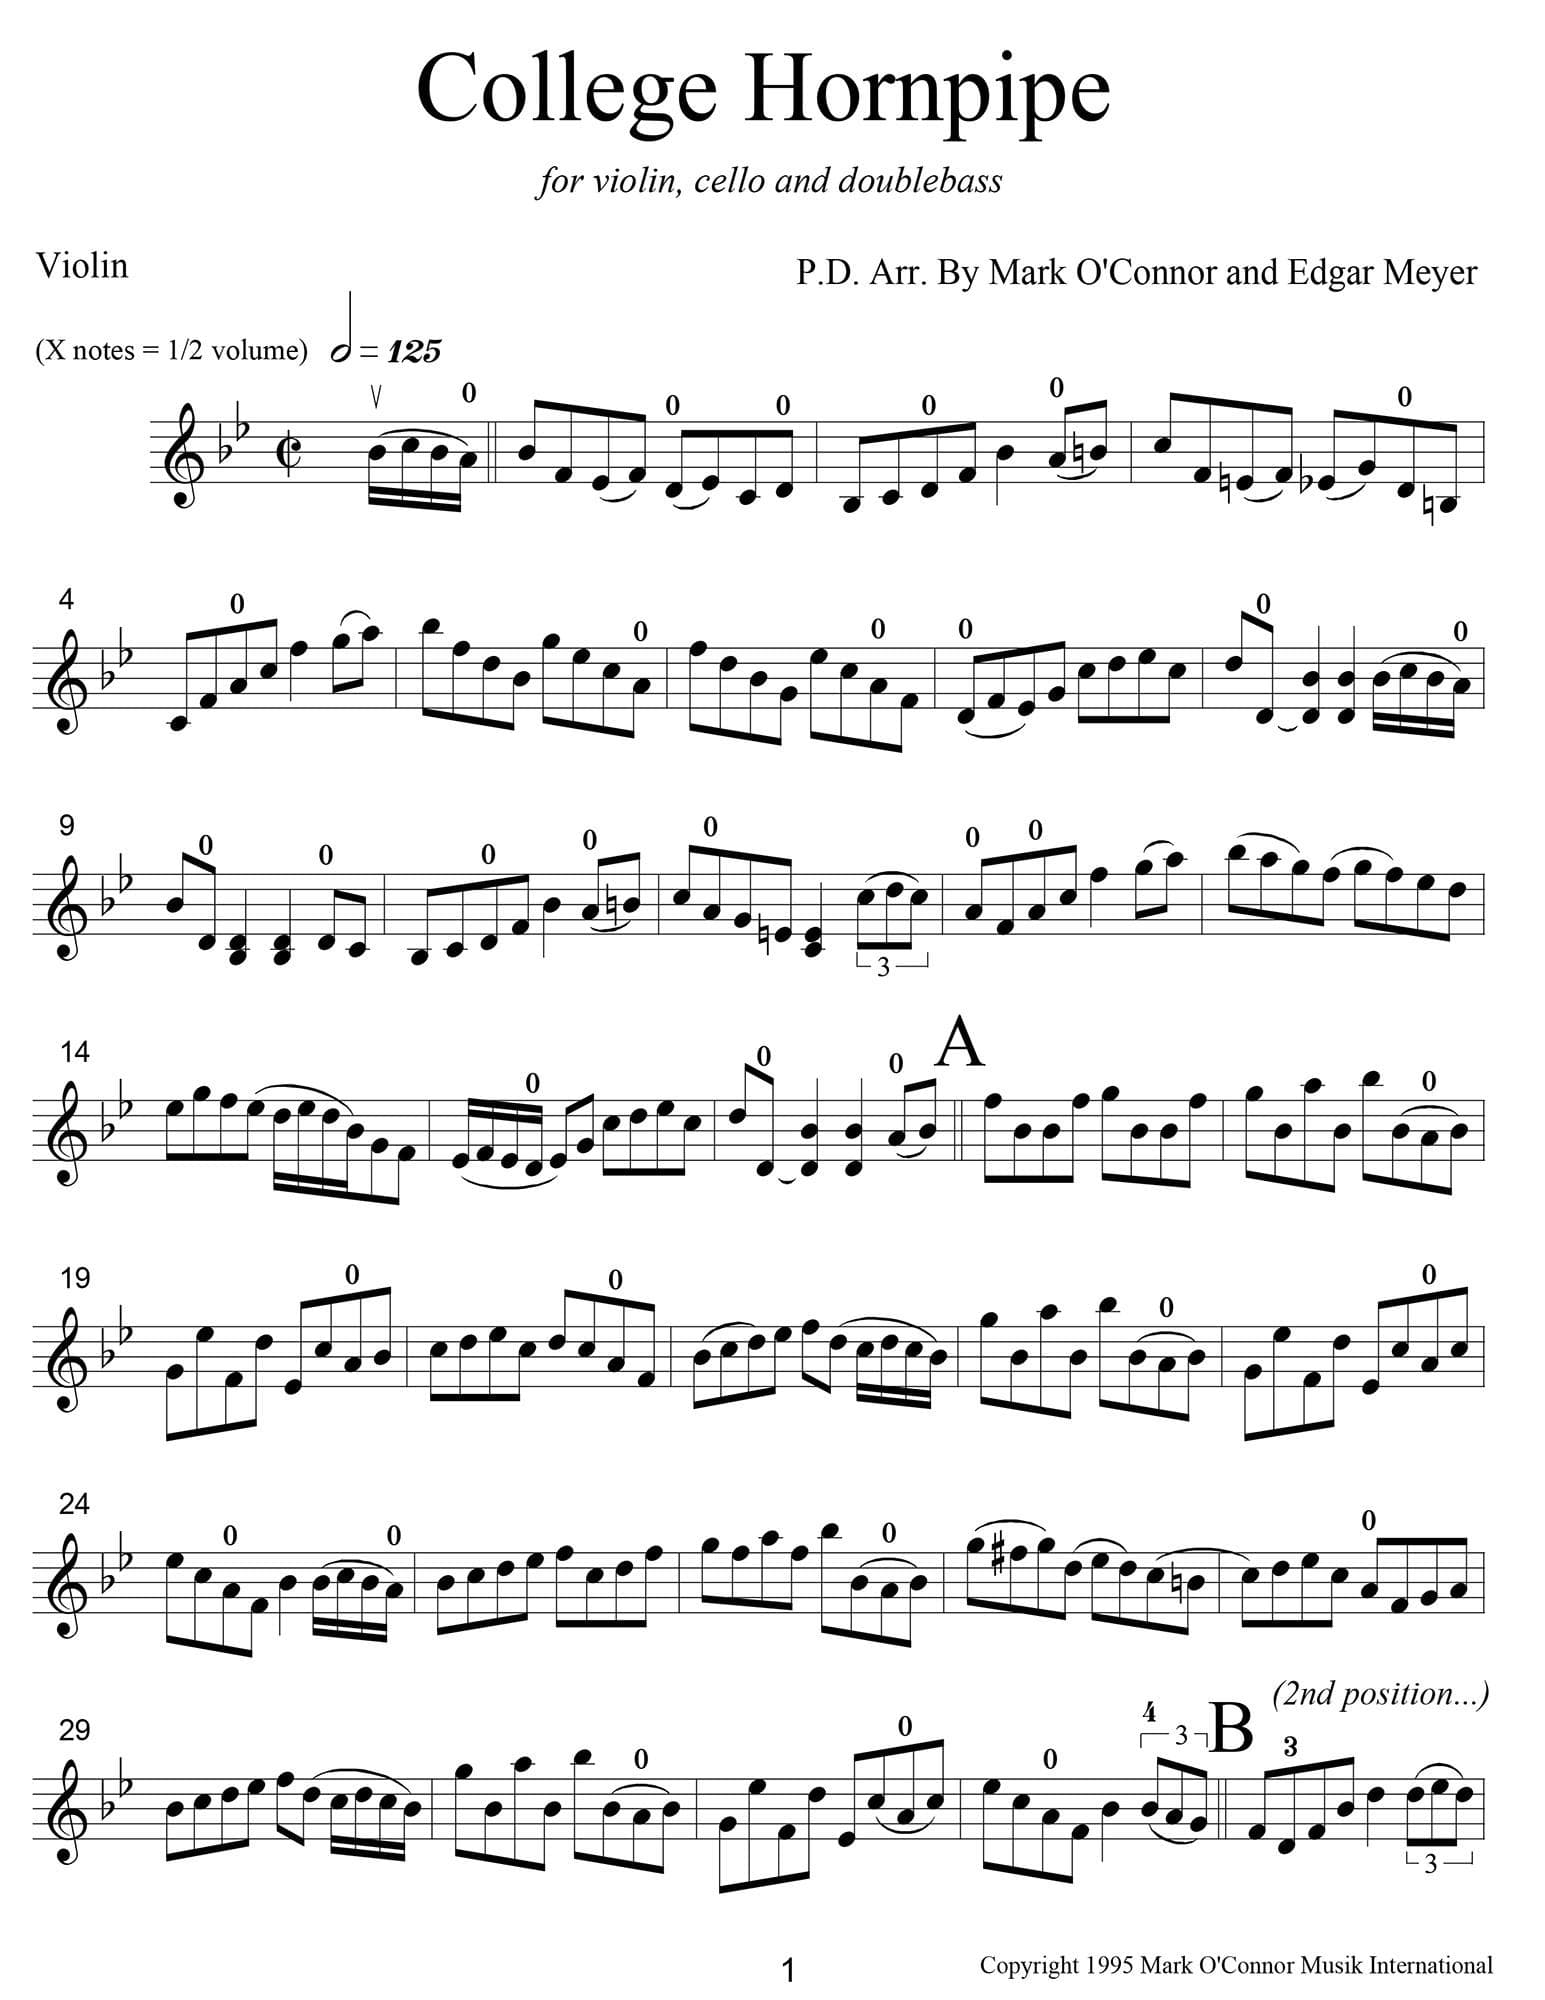 O'Connor, Mark - College Hornpipe for Violin, Cello, and Bass - Violin - Digital Download